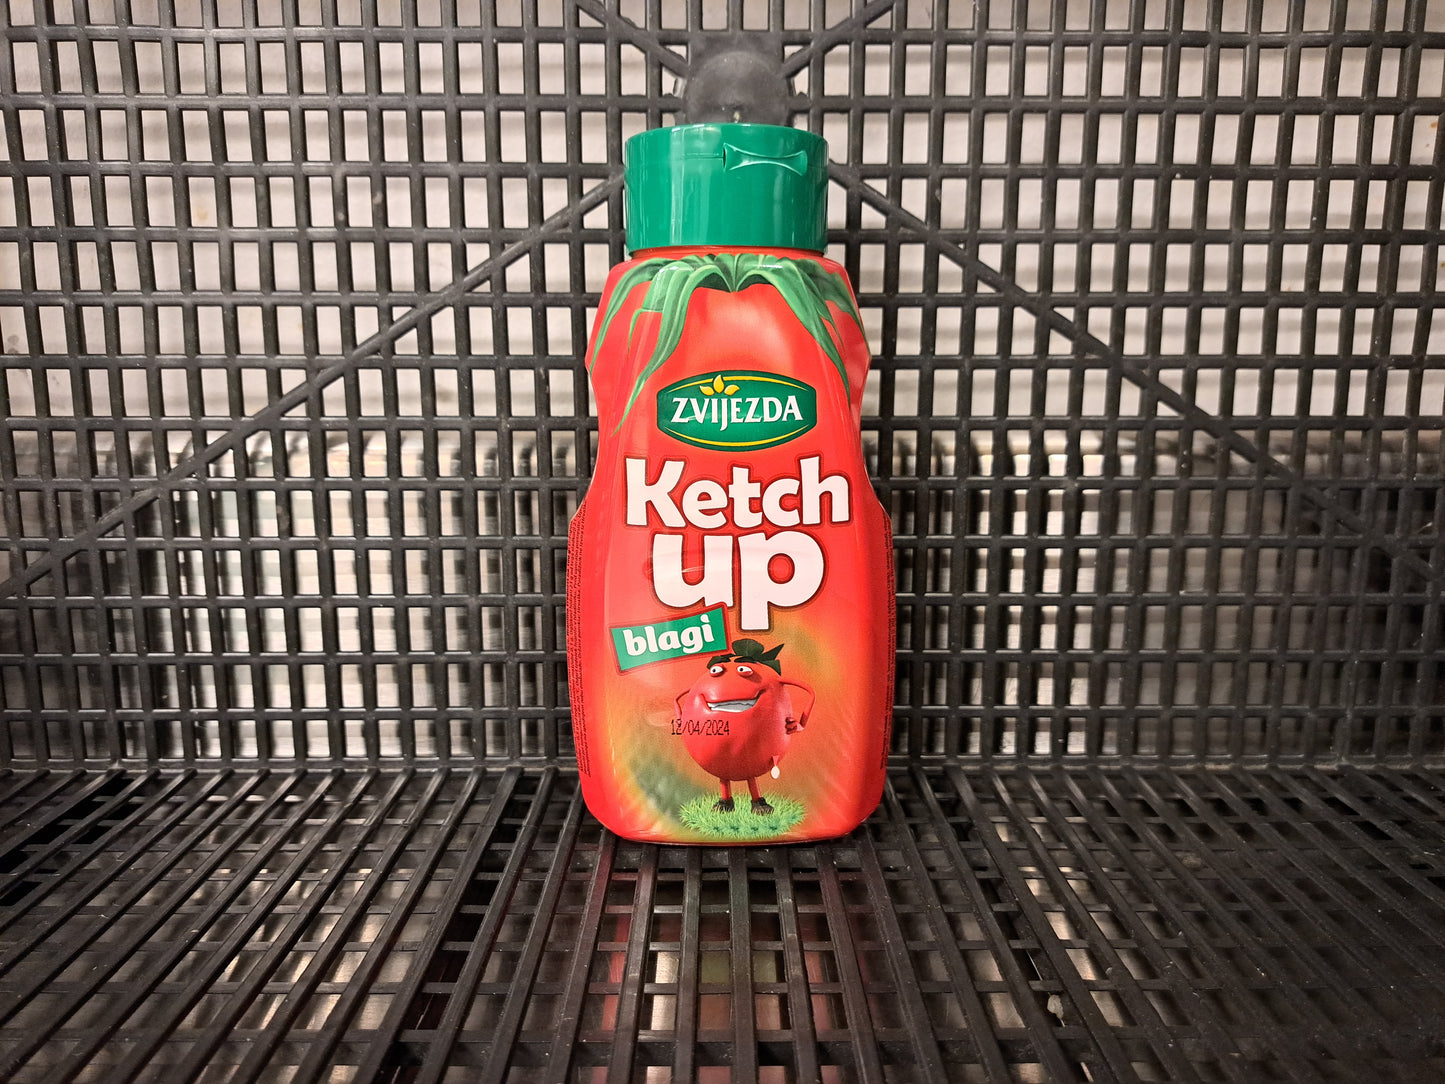 Zvijezda Ketchup blagi 500g